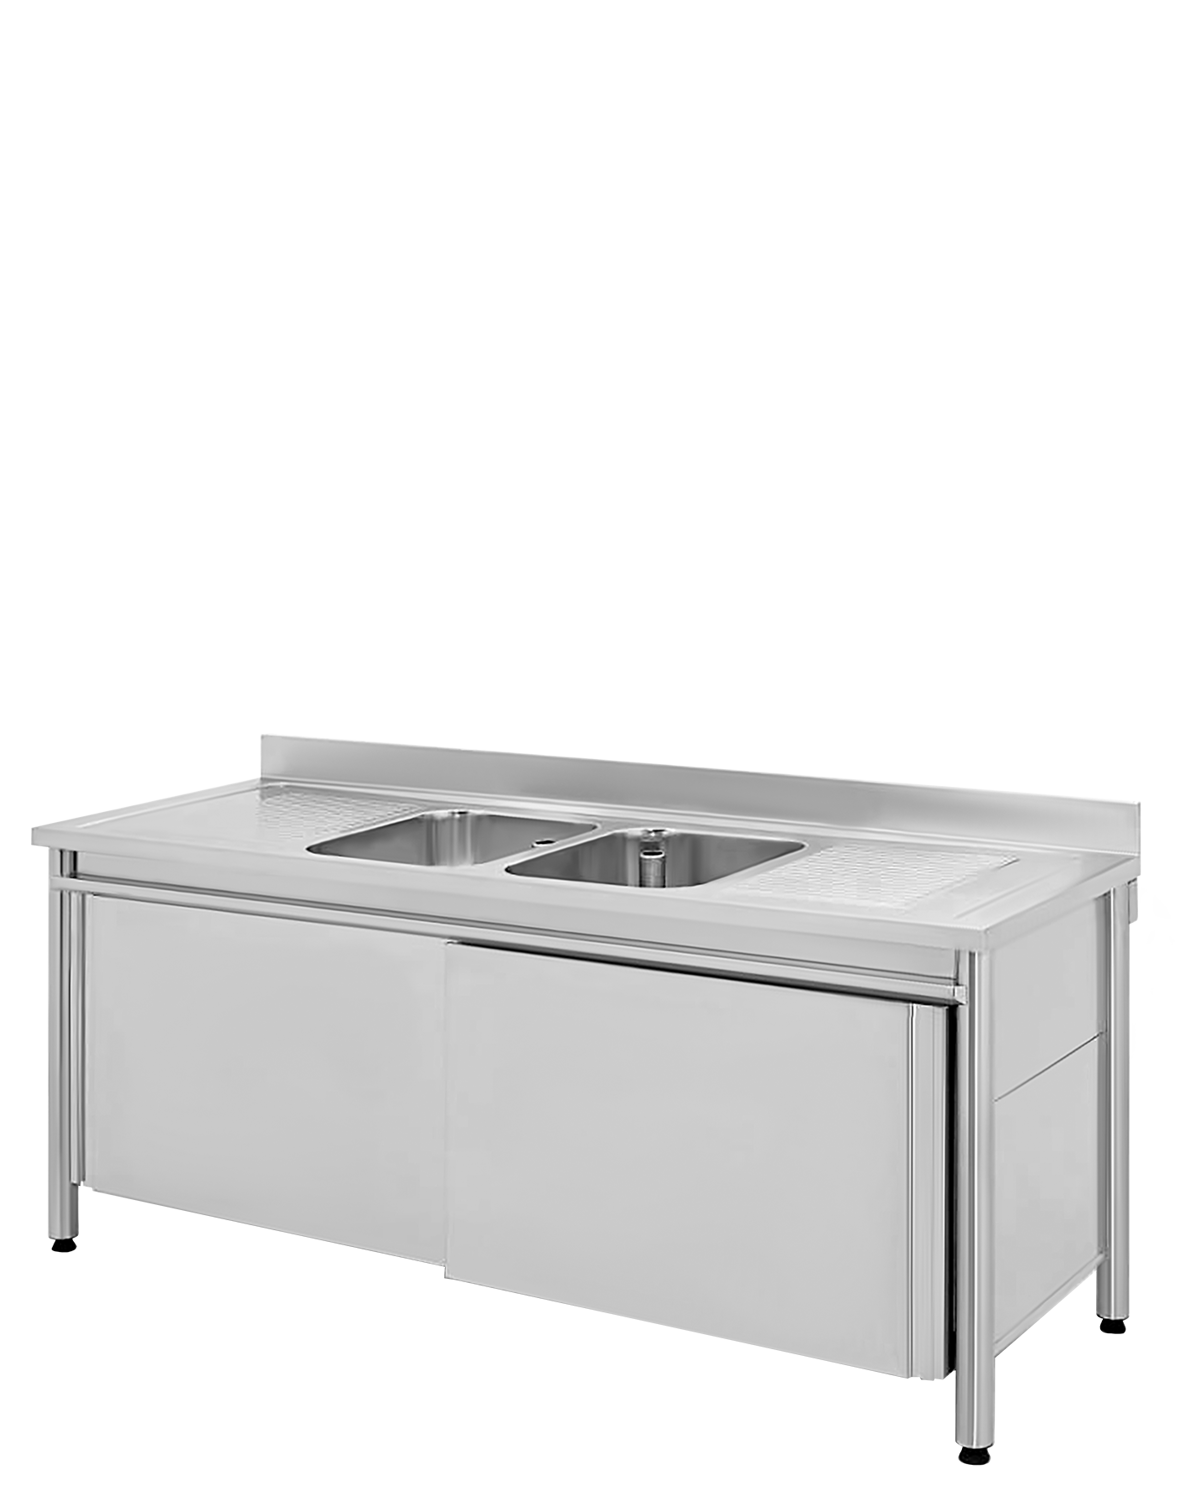 RVS bedrijfsinrichting spoeltafels met 1 of 2 wasbakken en afdruiprekken verschillende modellen met legplanken en onderbouwkasten met deurtjes